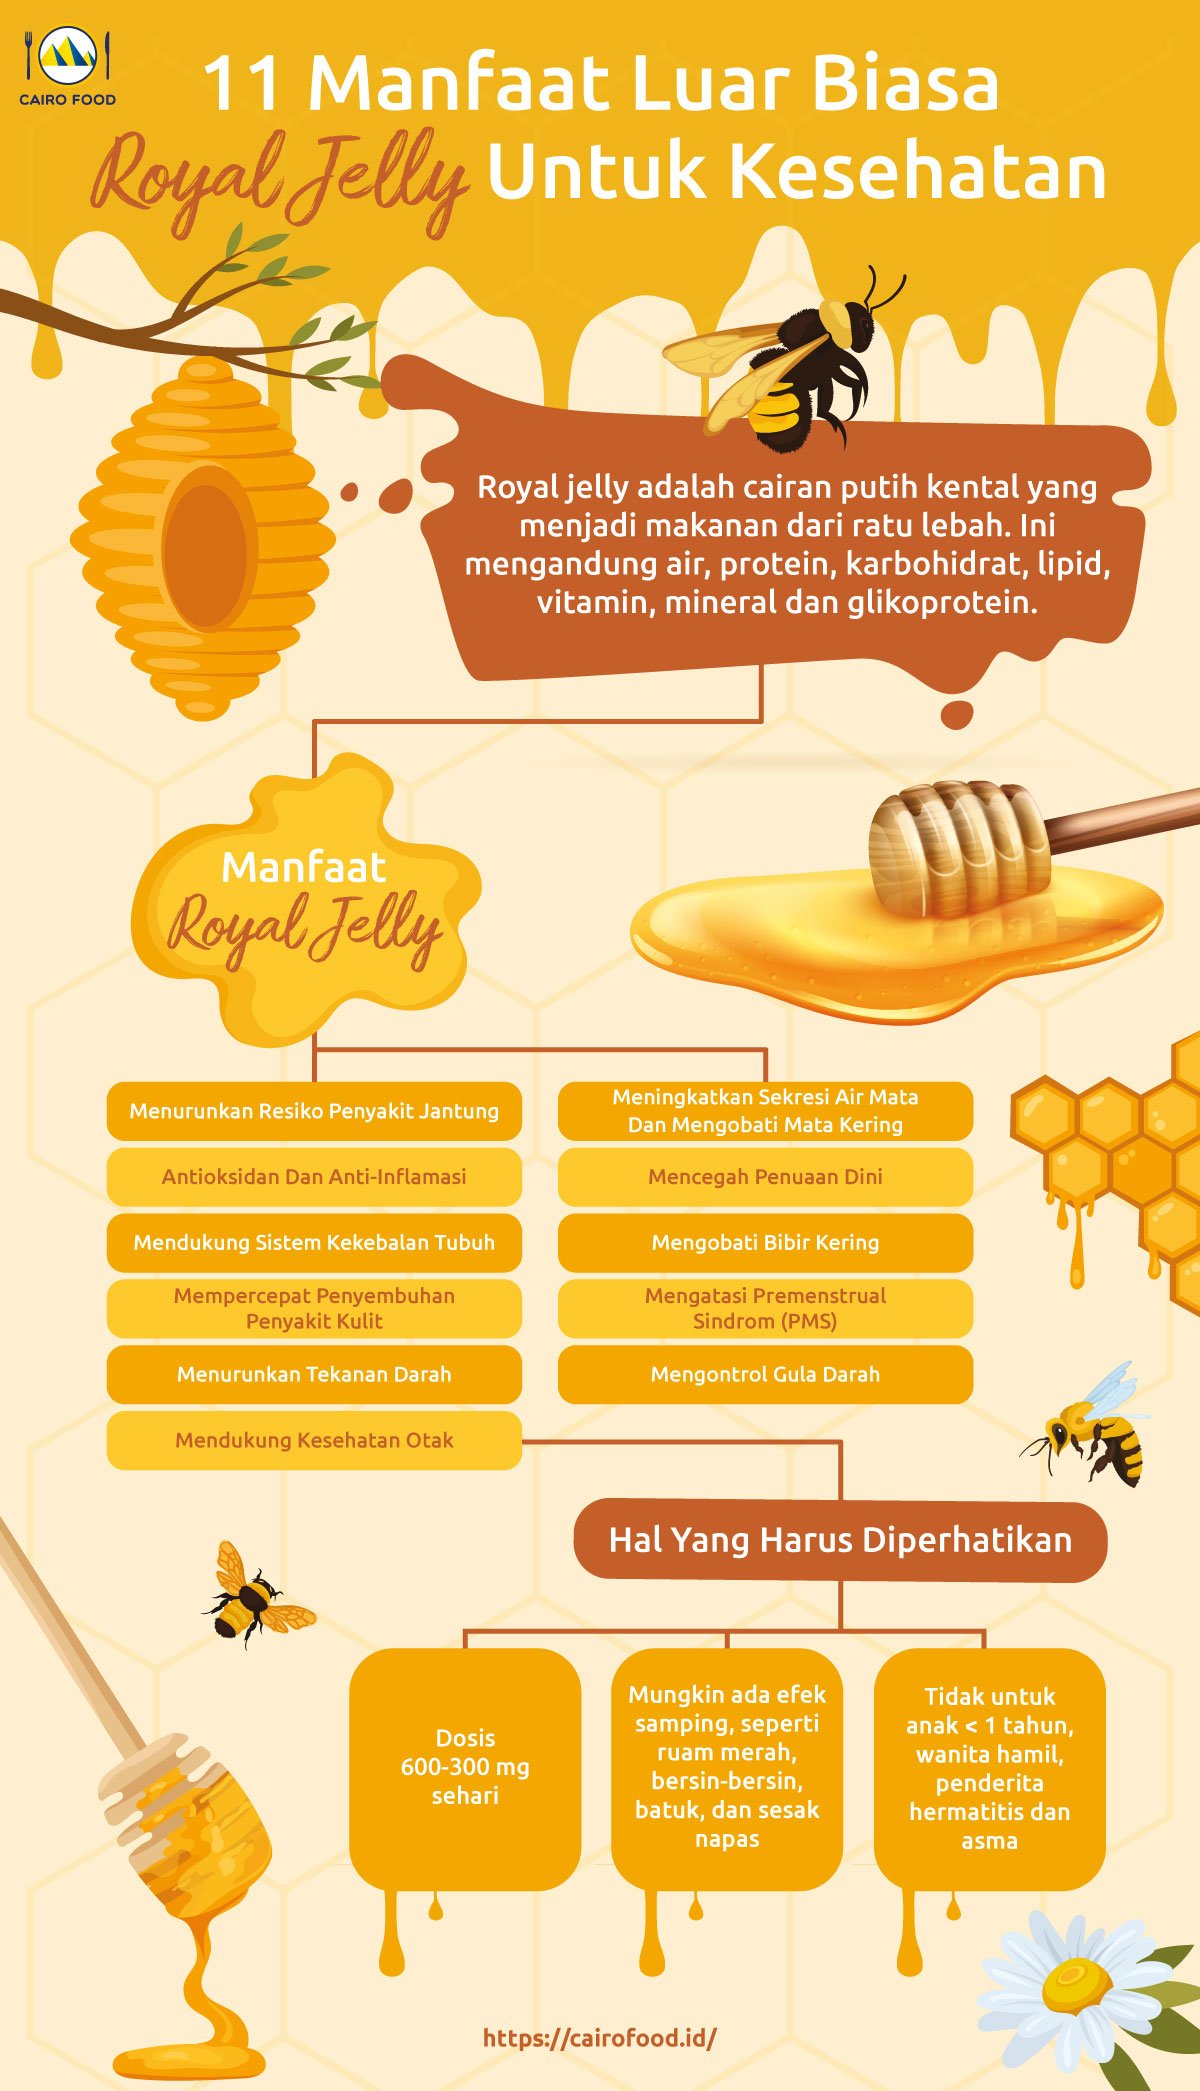 Infographic 11 Manfaat Luar Biasa Royal Jelly Untuk Kesehatan